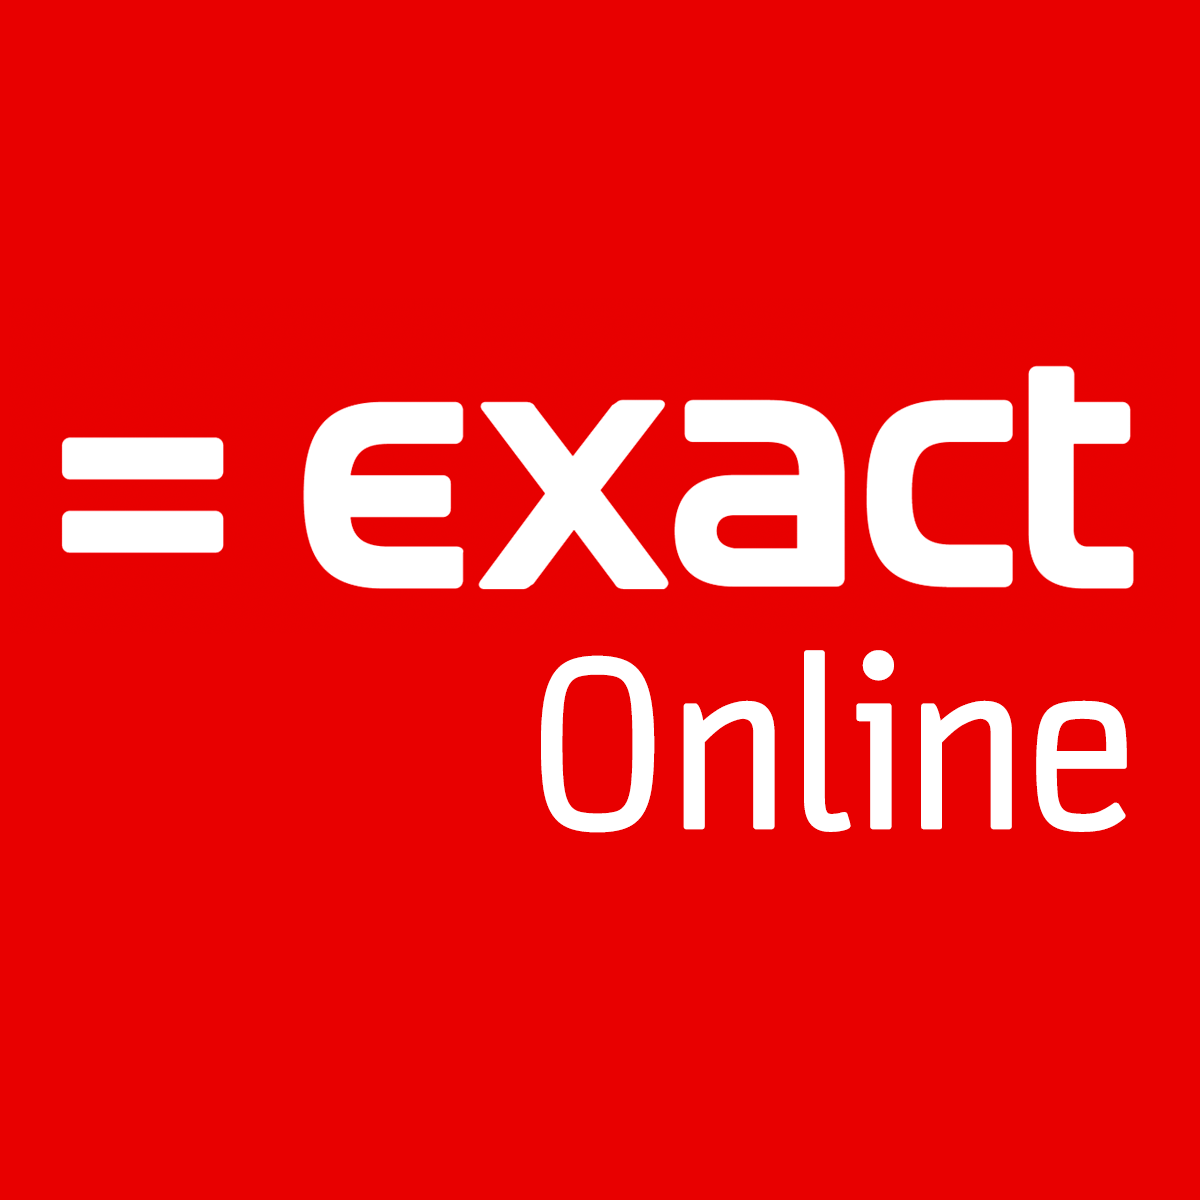 Exact Online Connector